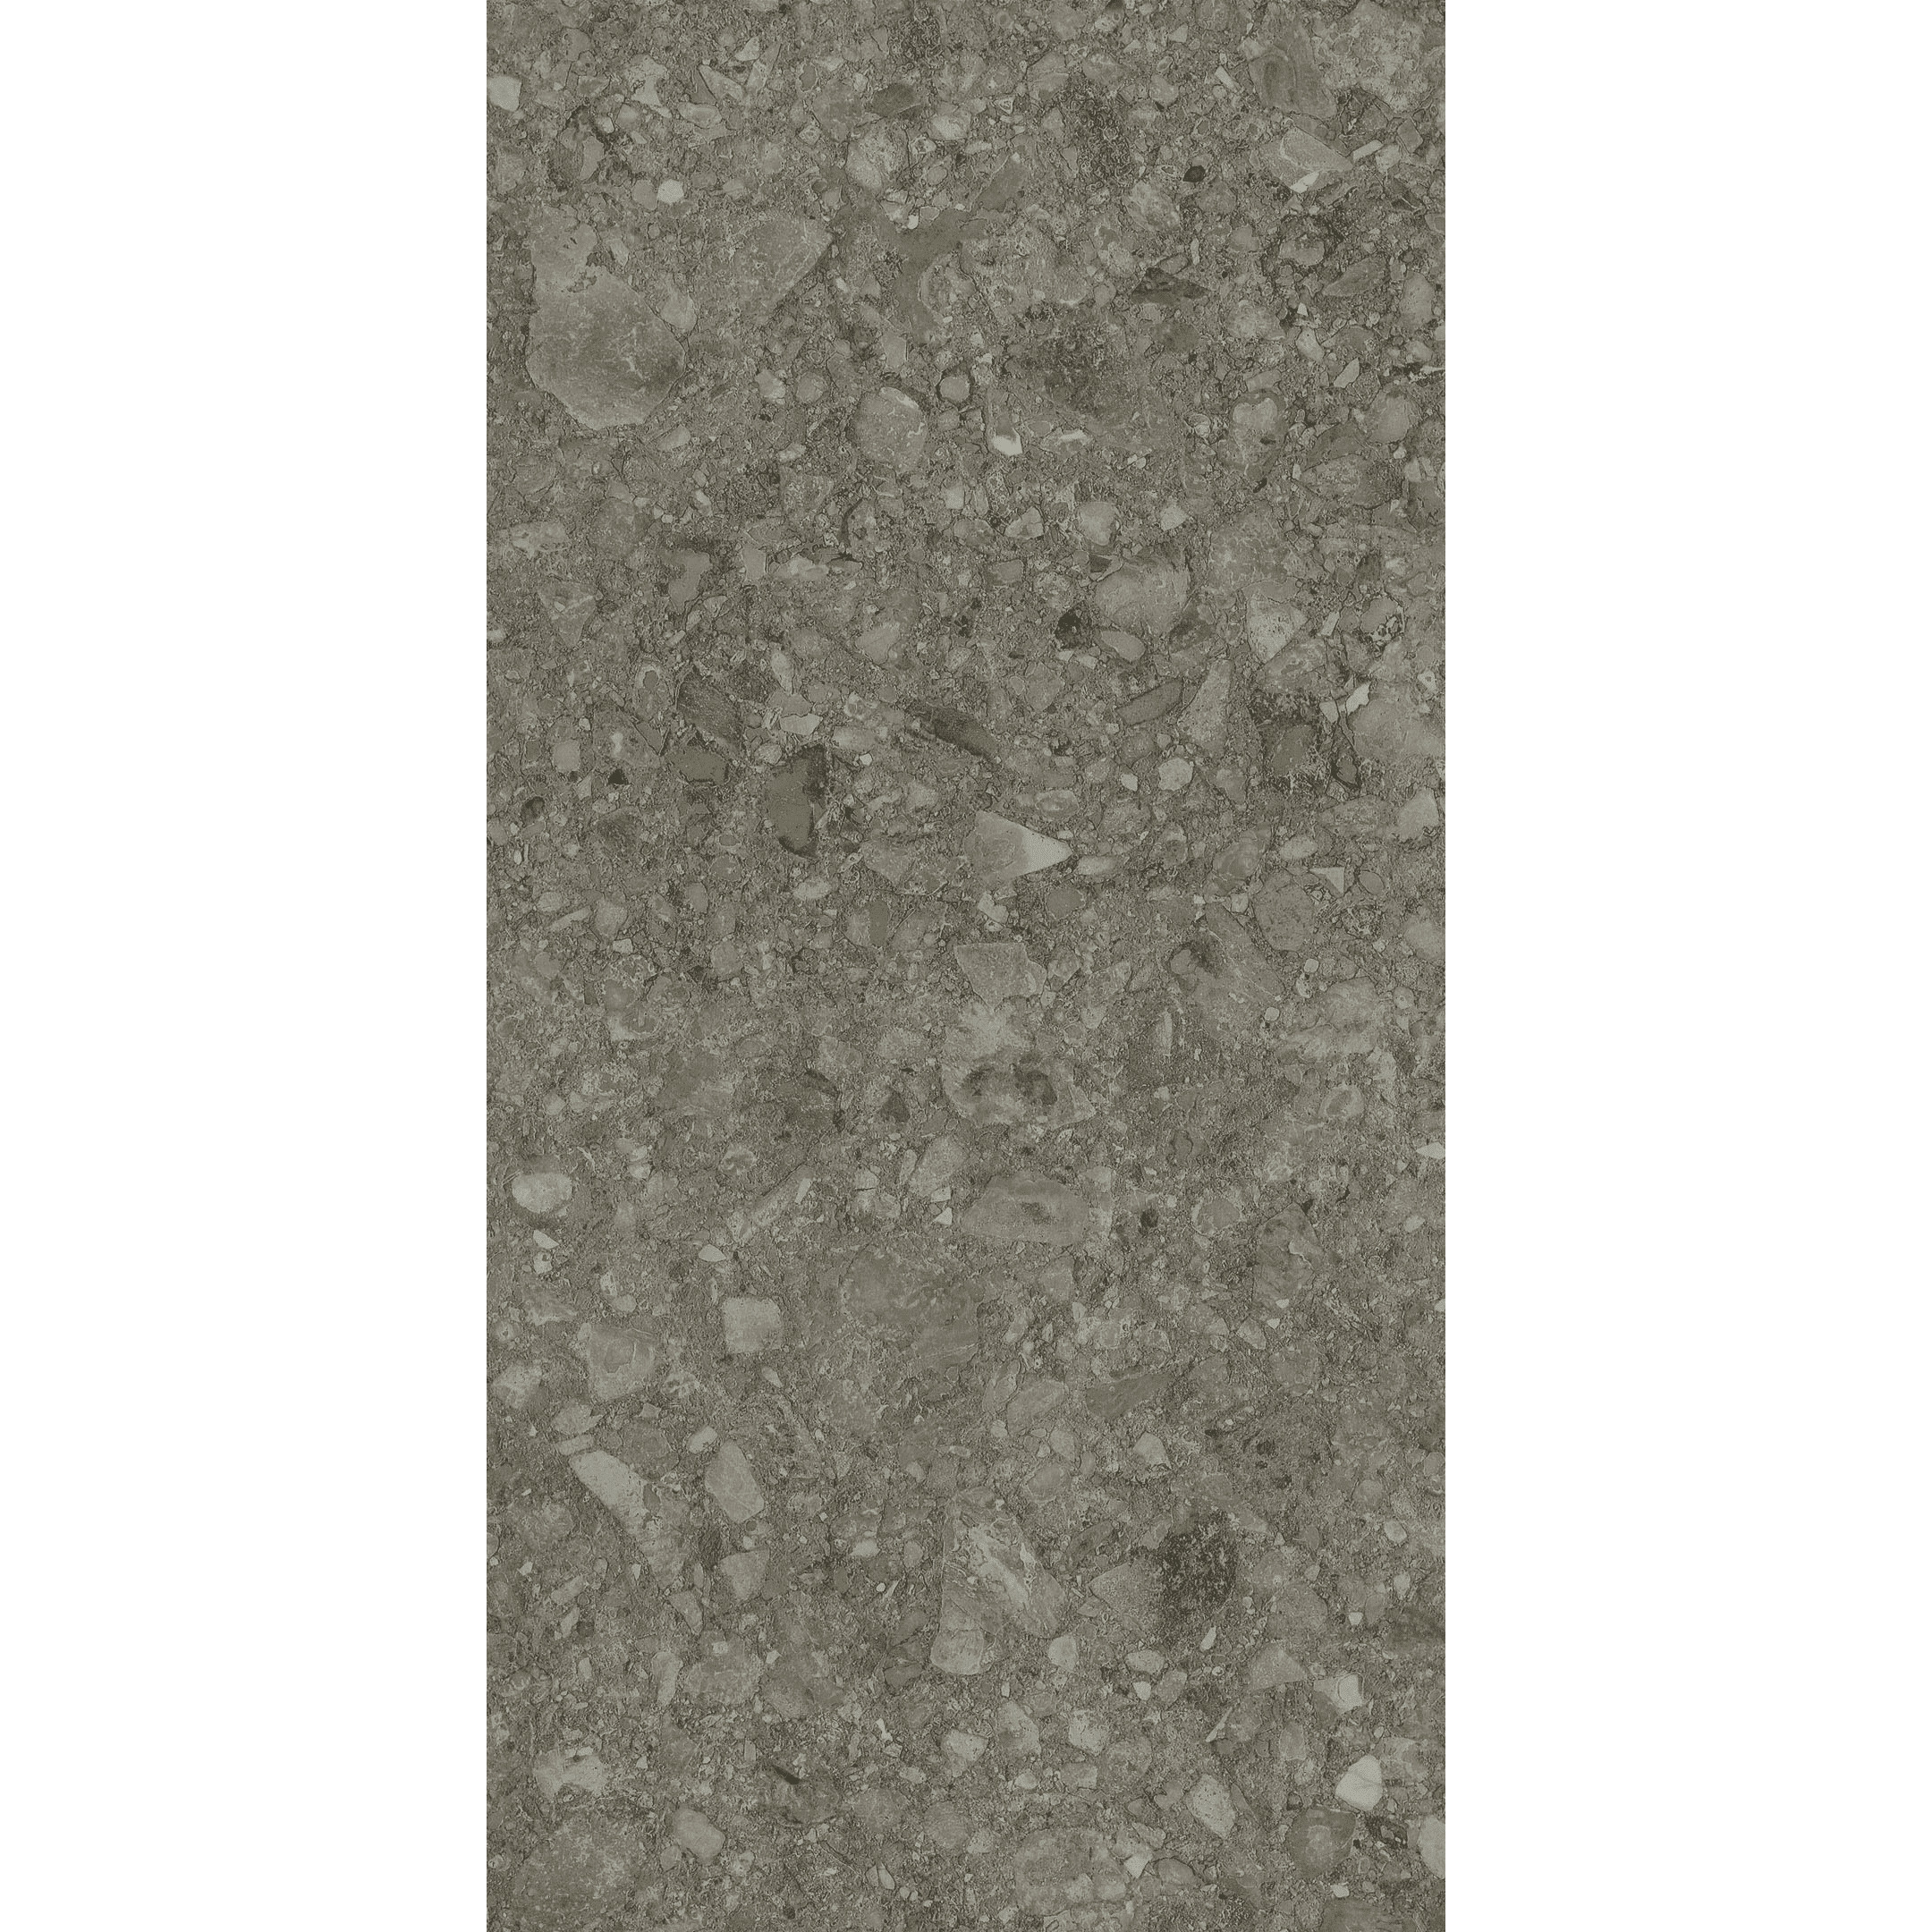 фото Керамогранит керамика будущего герда серый id054 матовый 1200х600х10,5 мм (3 шт.=2,16 кв.м)